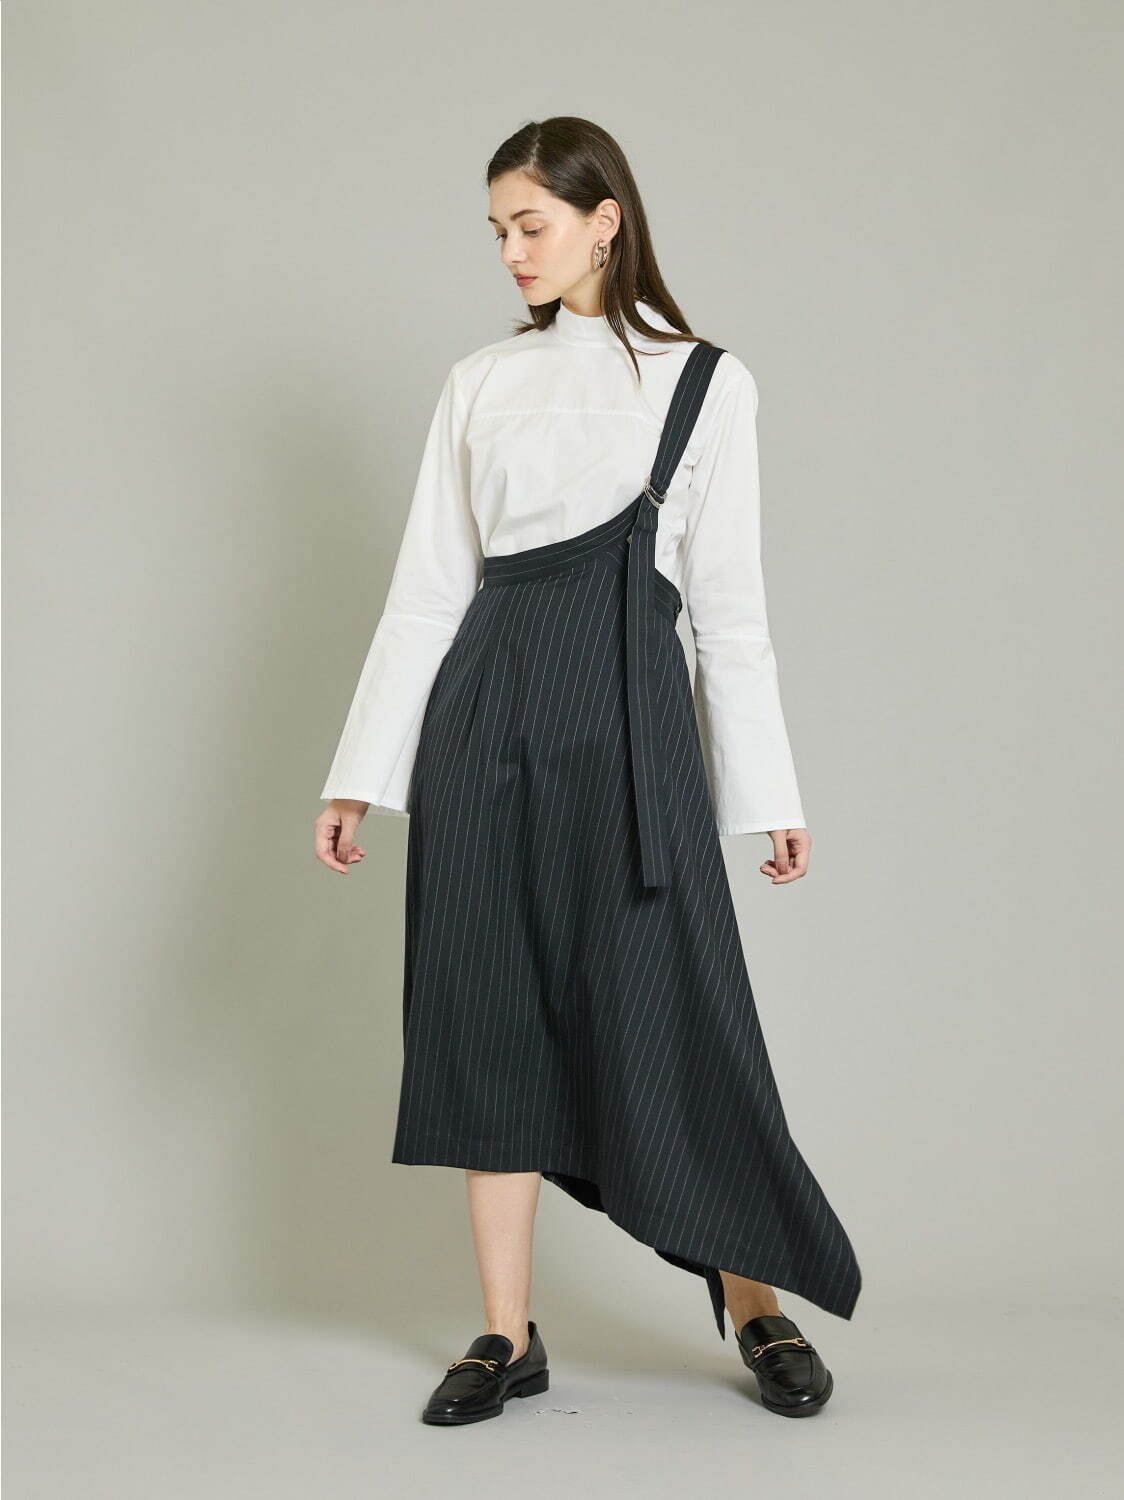 EX.Wool pinstripe single code skirt 47,300円